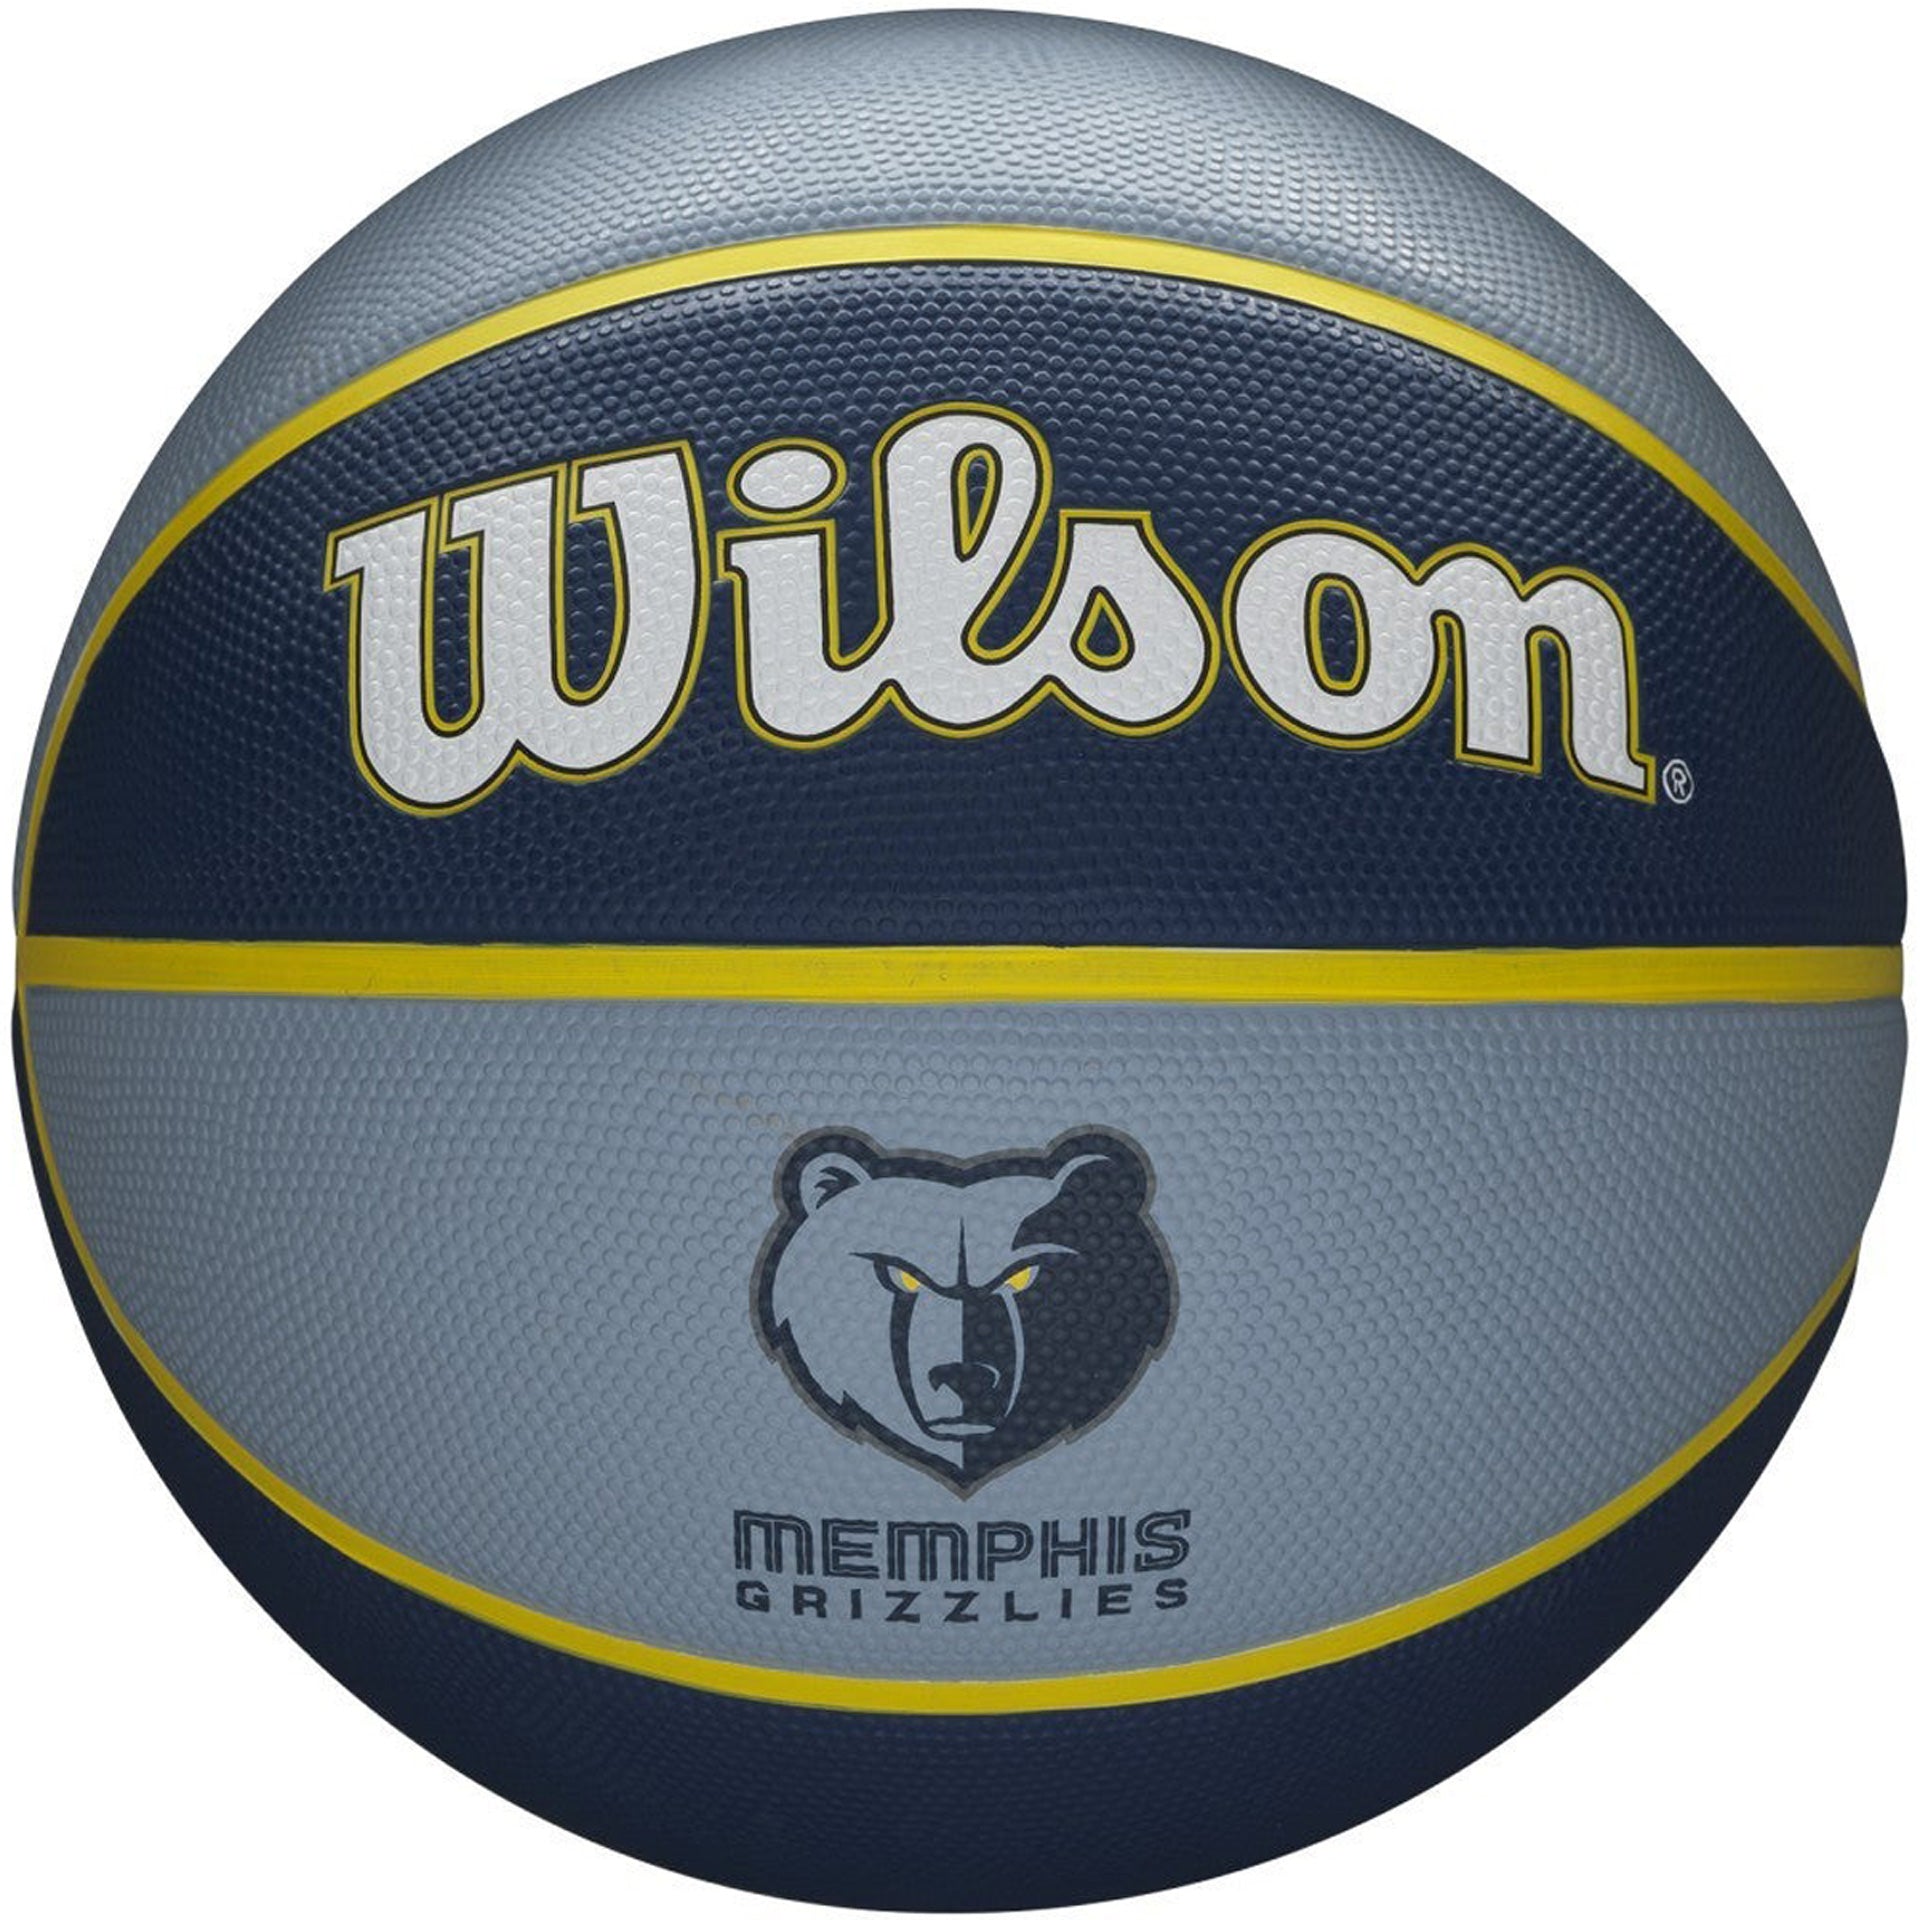 Balón Baloncesto Wilson Nba Team Tribute Grizzlies